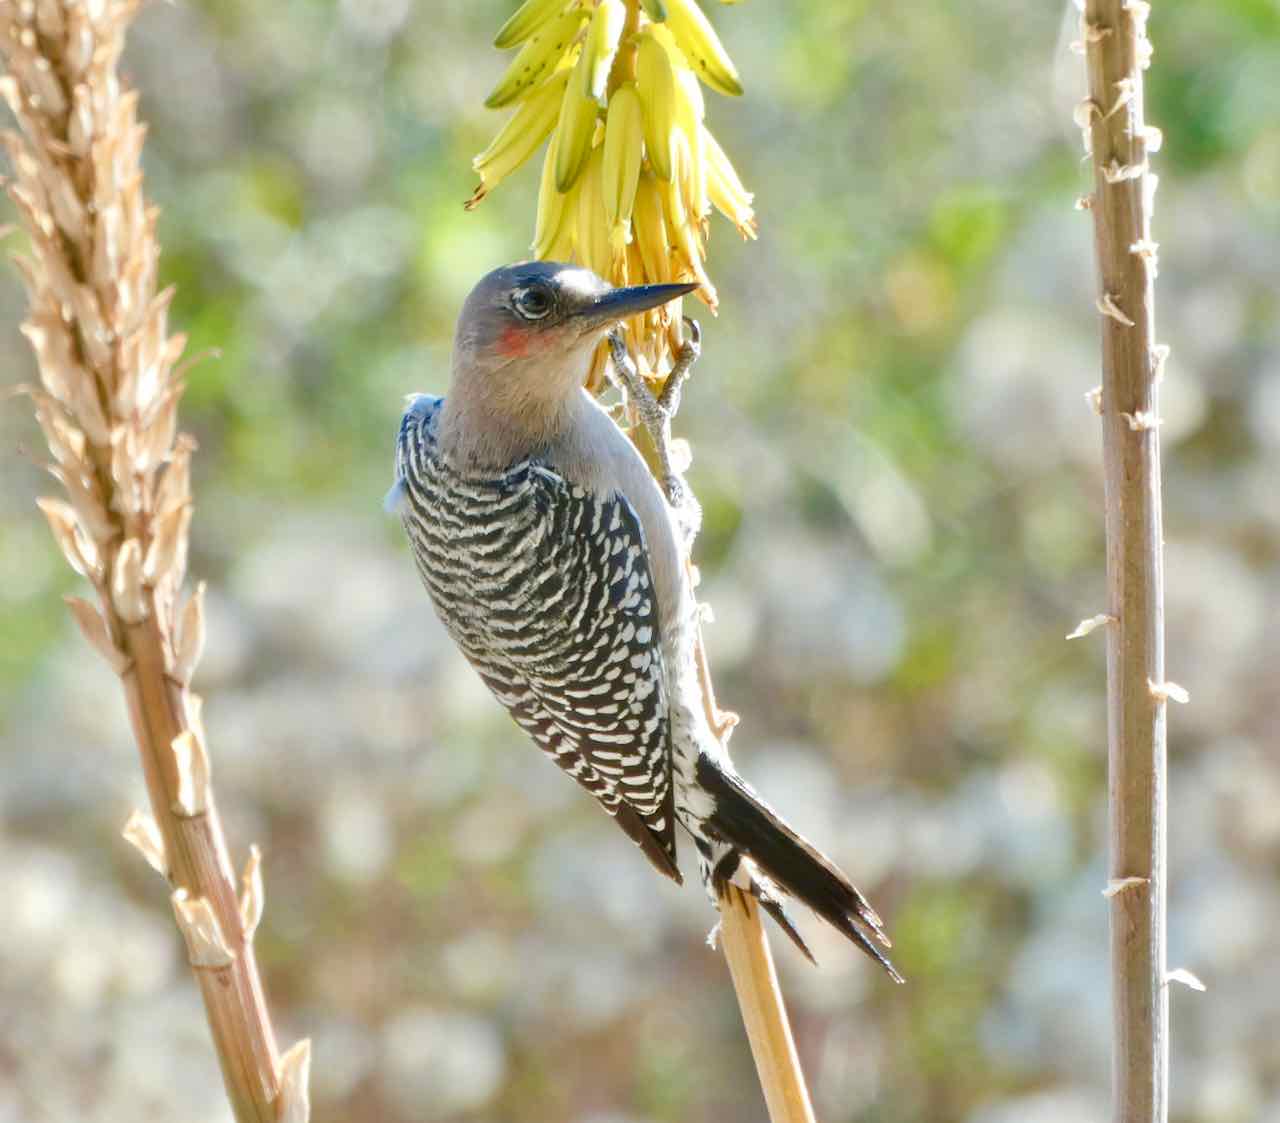 Gray-breasted woodpecker at Rancho Pitaya